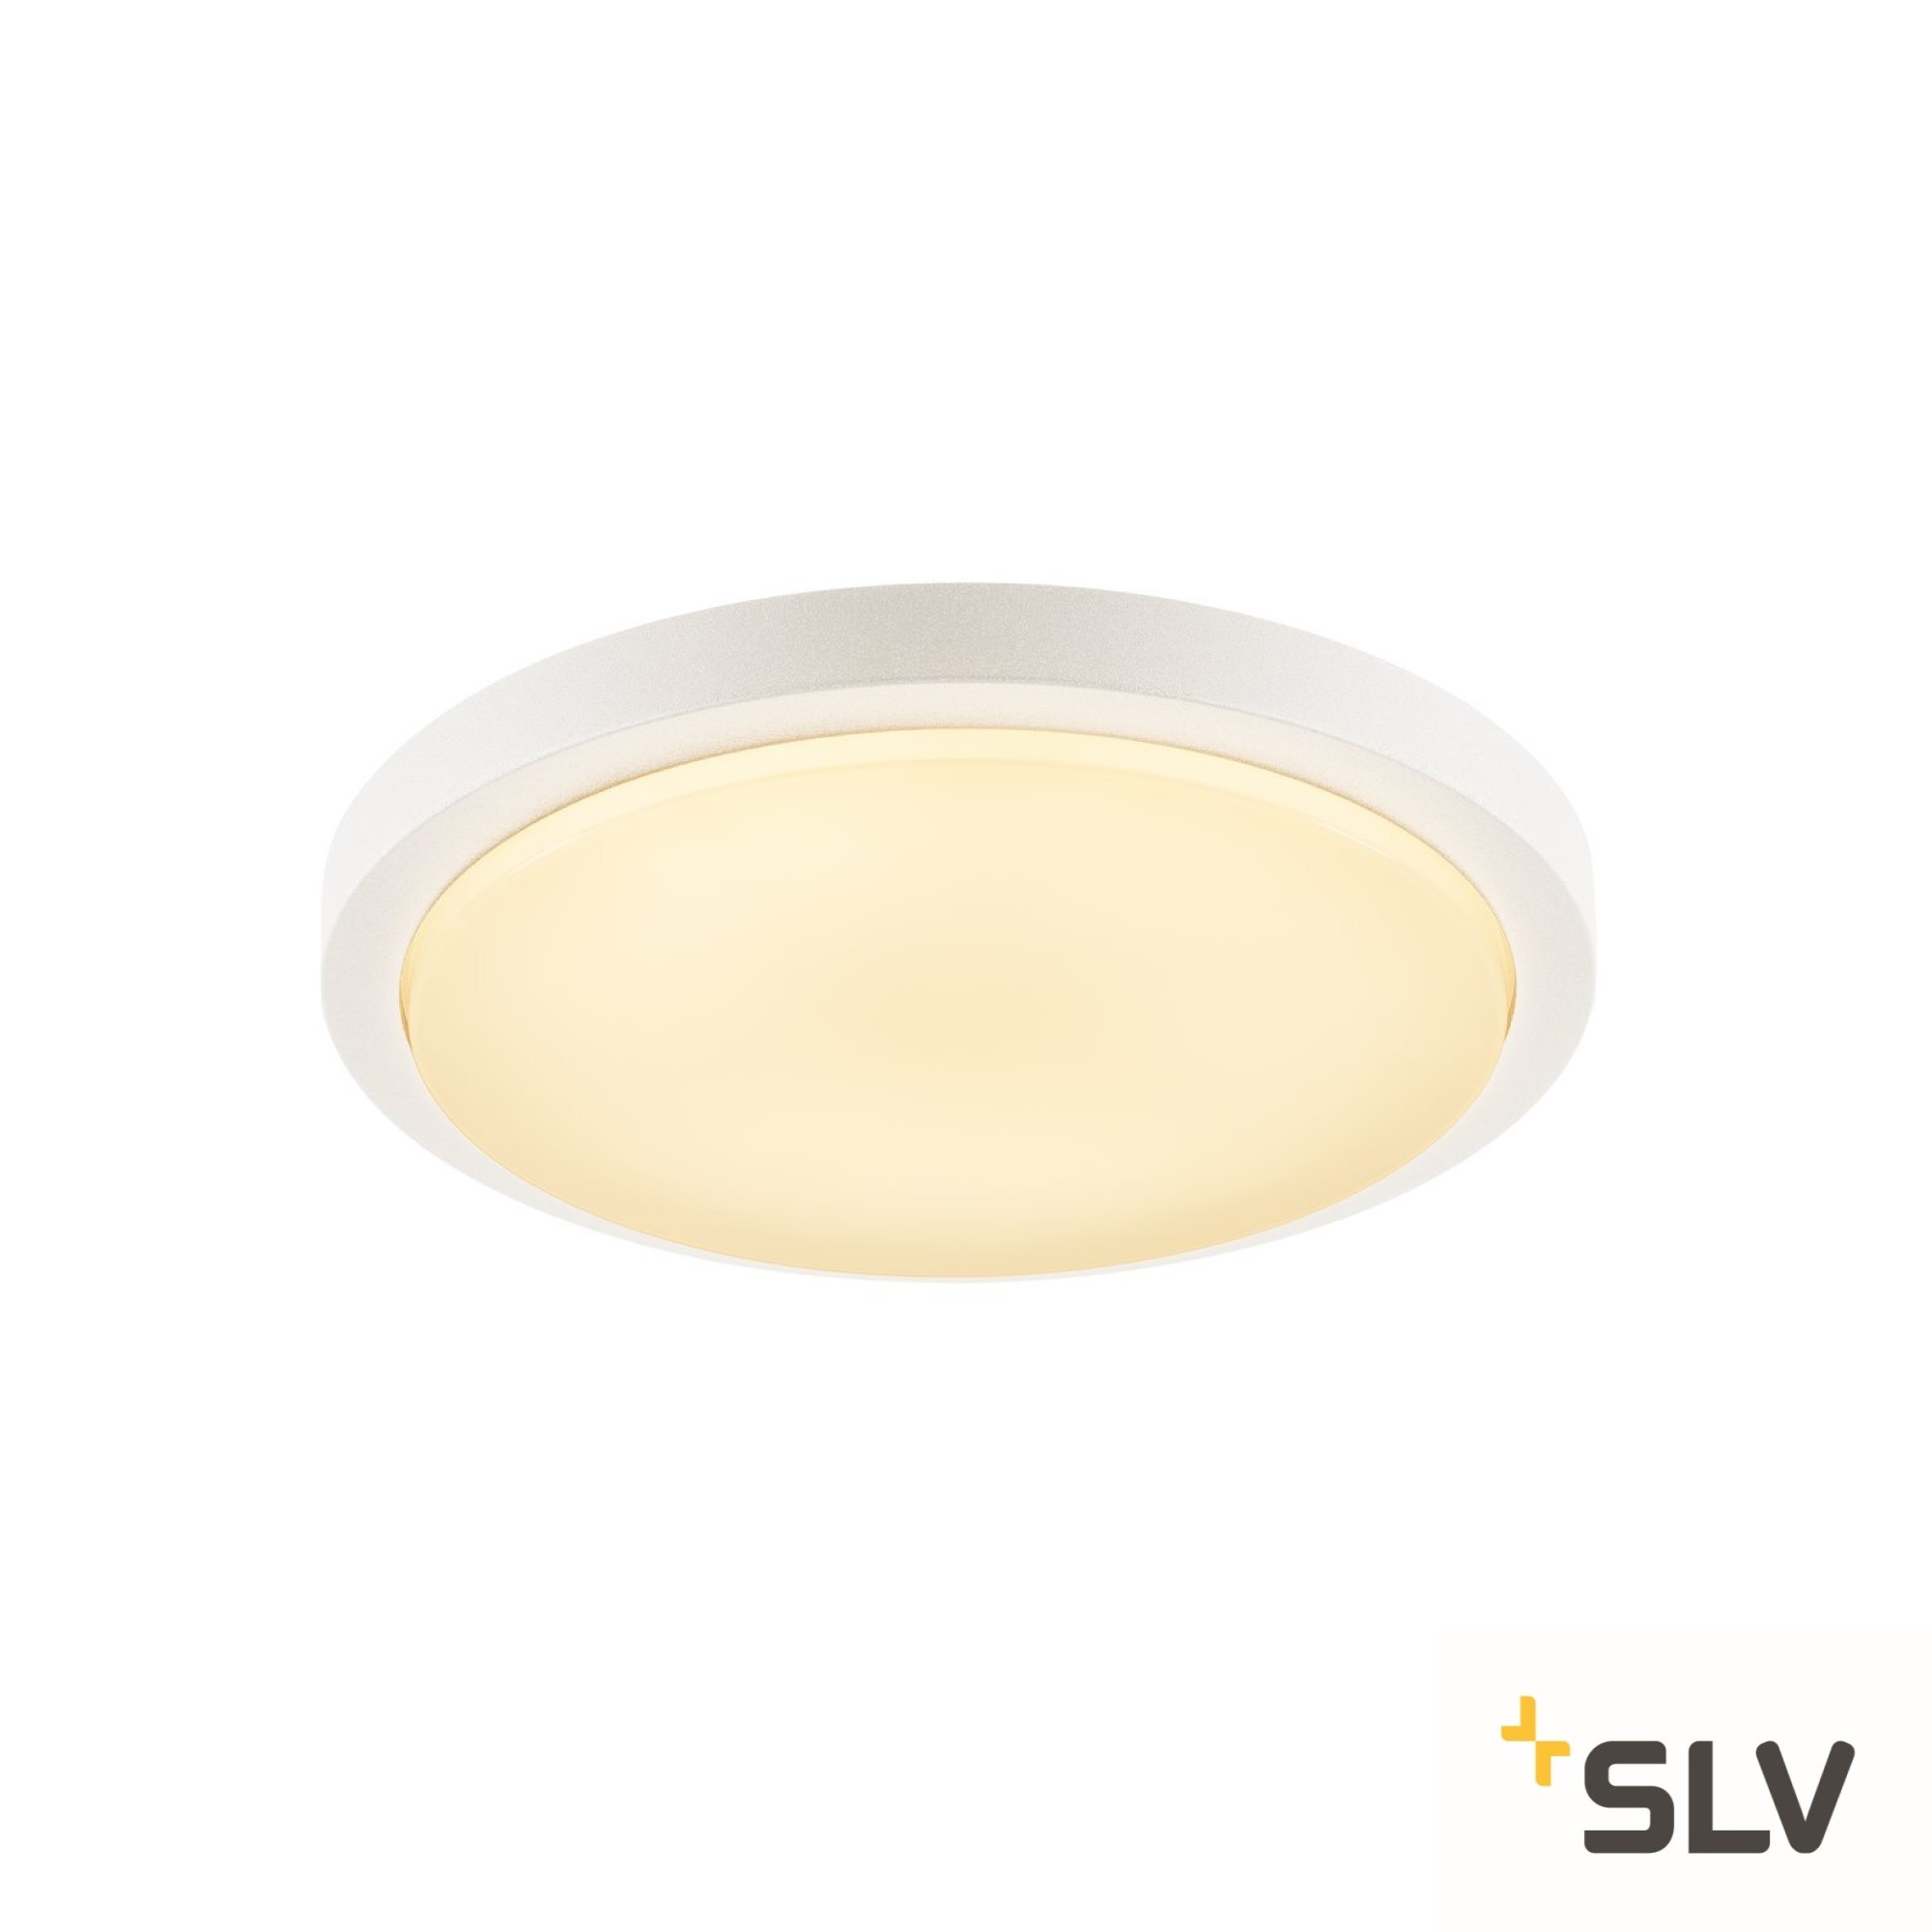 SLV LED Ceiling Light AINOS with Motion Sensor white IP44 1430lm 3000K